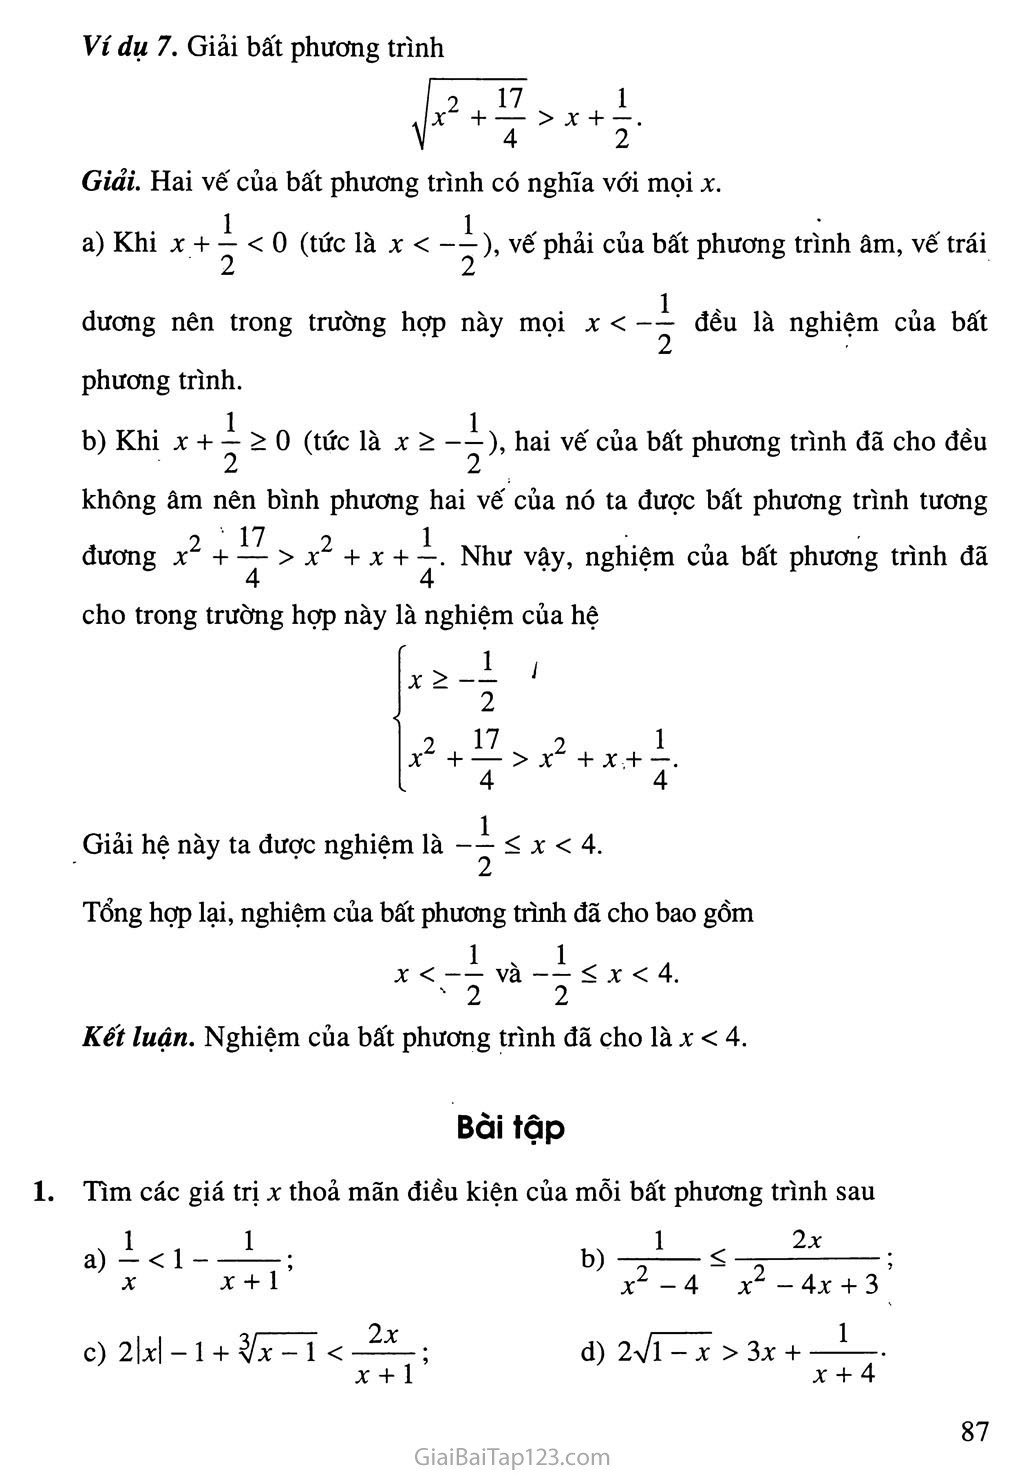 Bài 2. Bất phương trình và hệ bất phương trình một ẩn trang 8